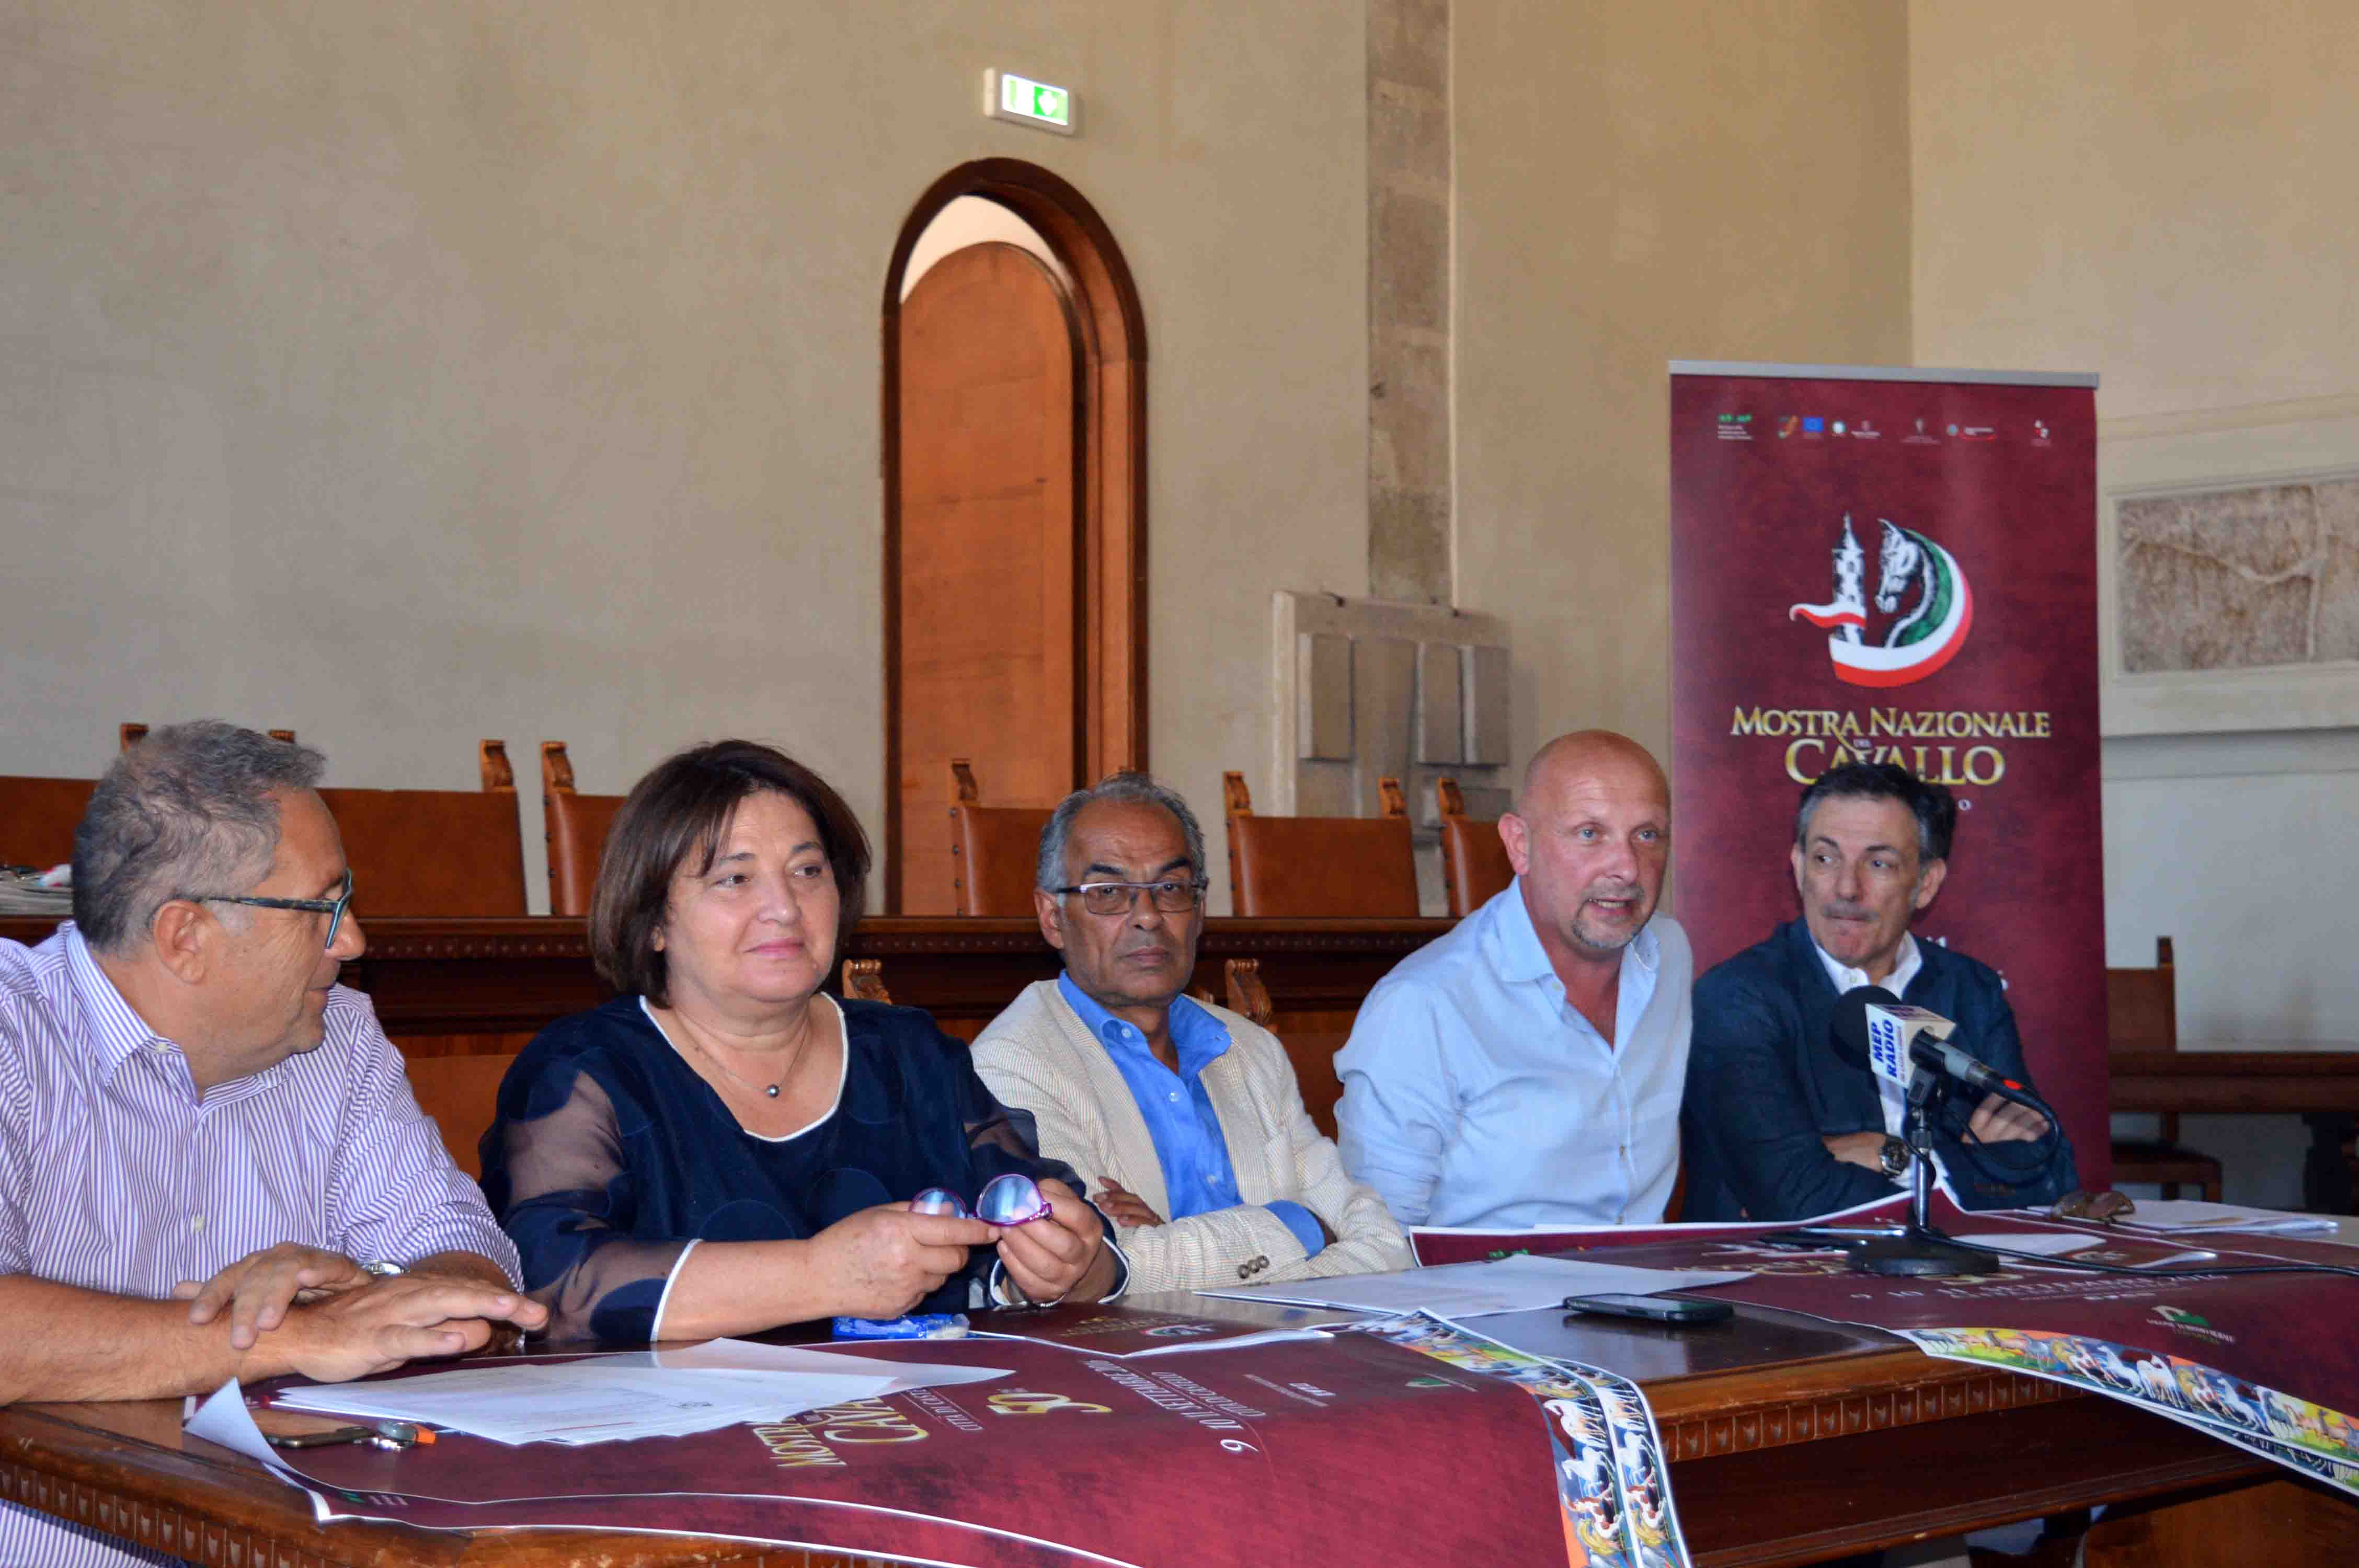 Conferenza stampa 50 Mostra Nazionale del Cavallo Massetti Cecchini Bacchetta Duranti Citerbo